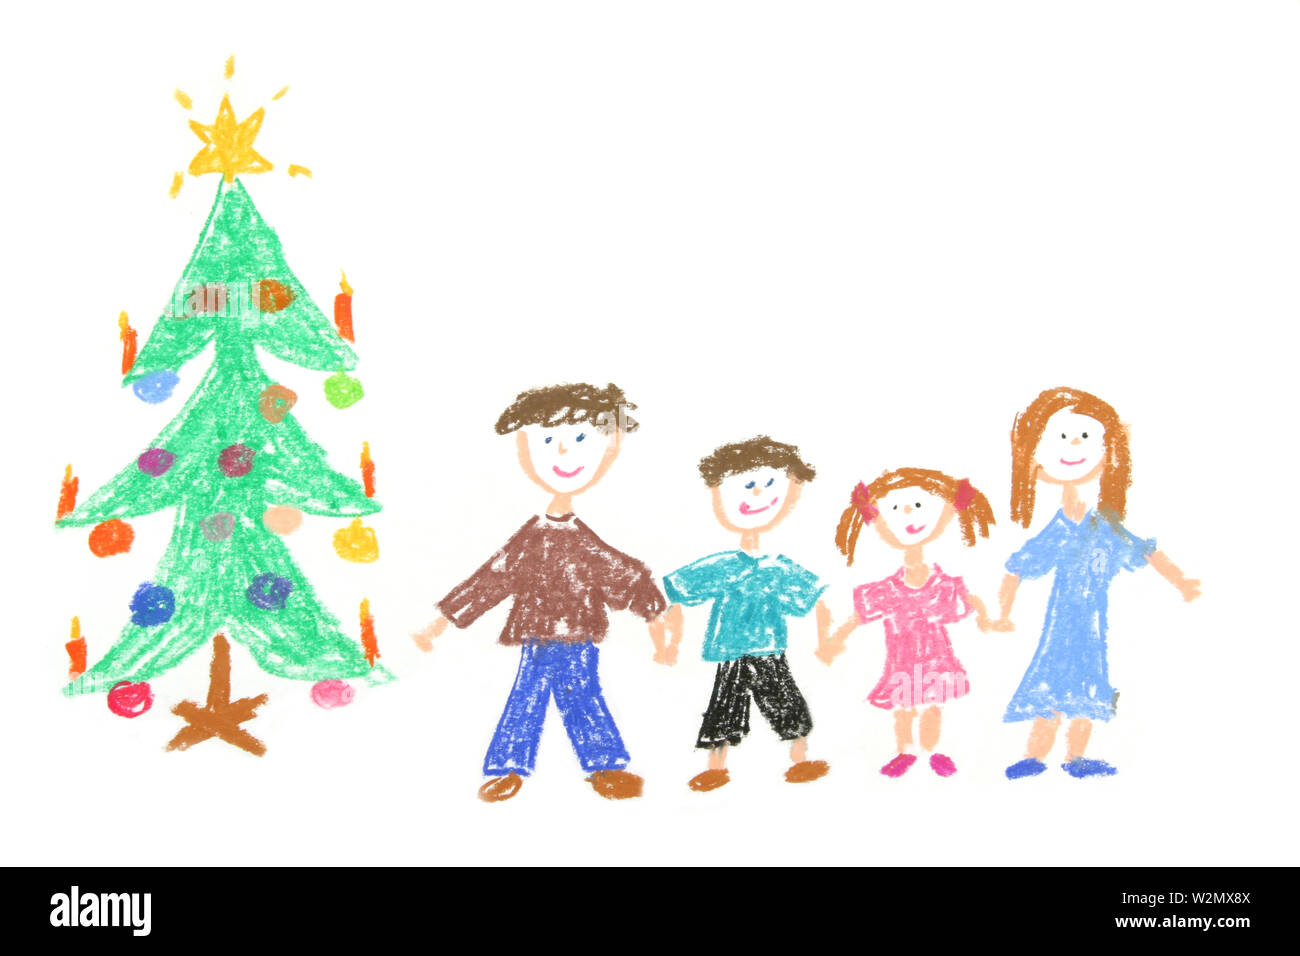 La famiglia felice con albero di Natale decorato. Childs disegno realizzato con le matite di colore pastello Foto Stock